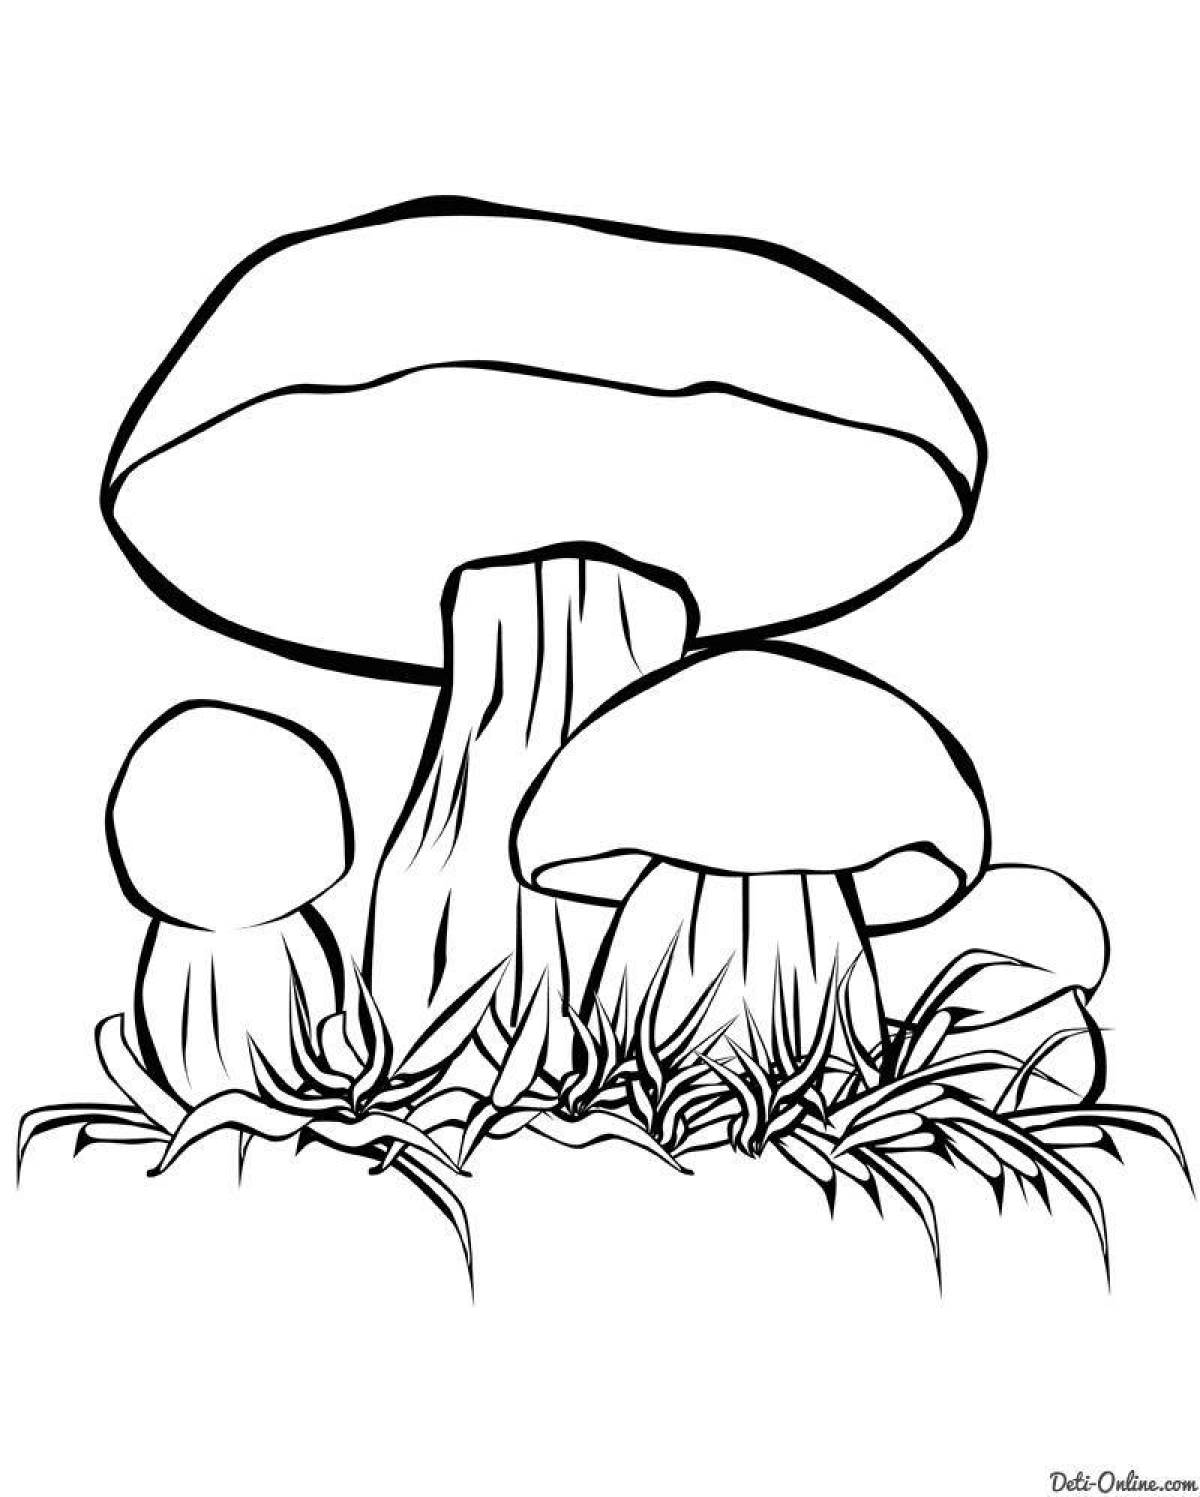 Раскраска элегантный гриб боровик